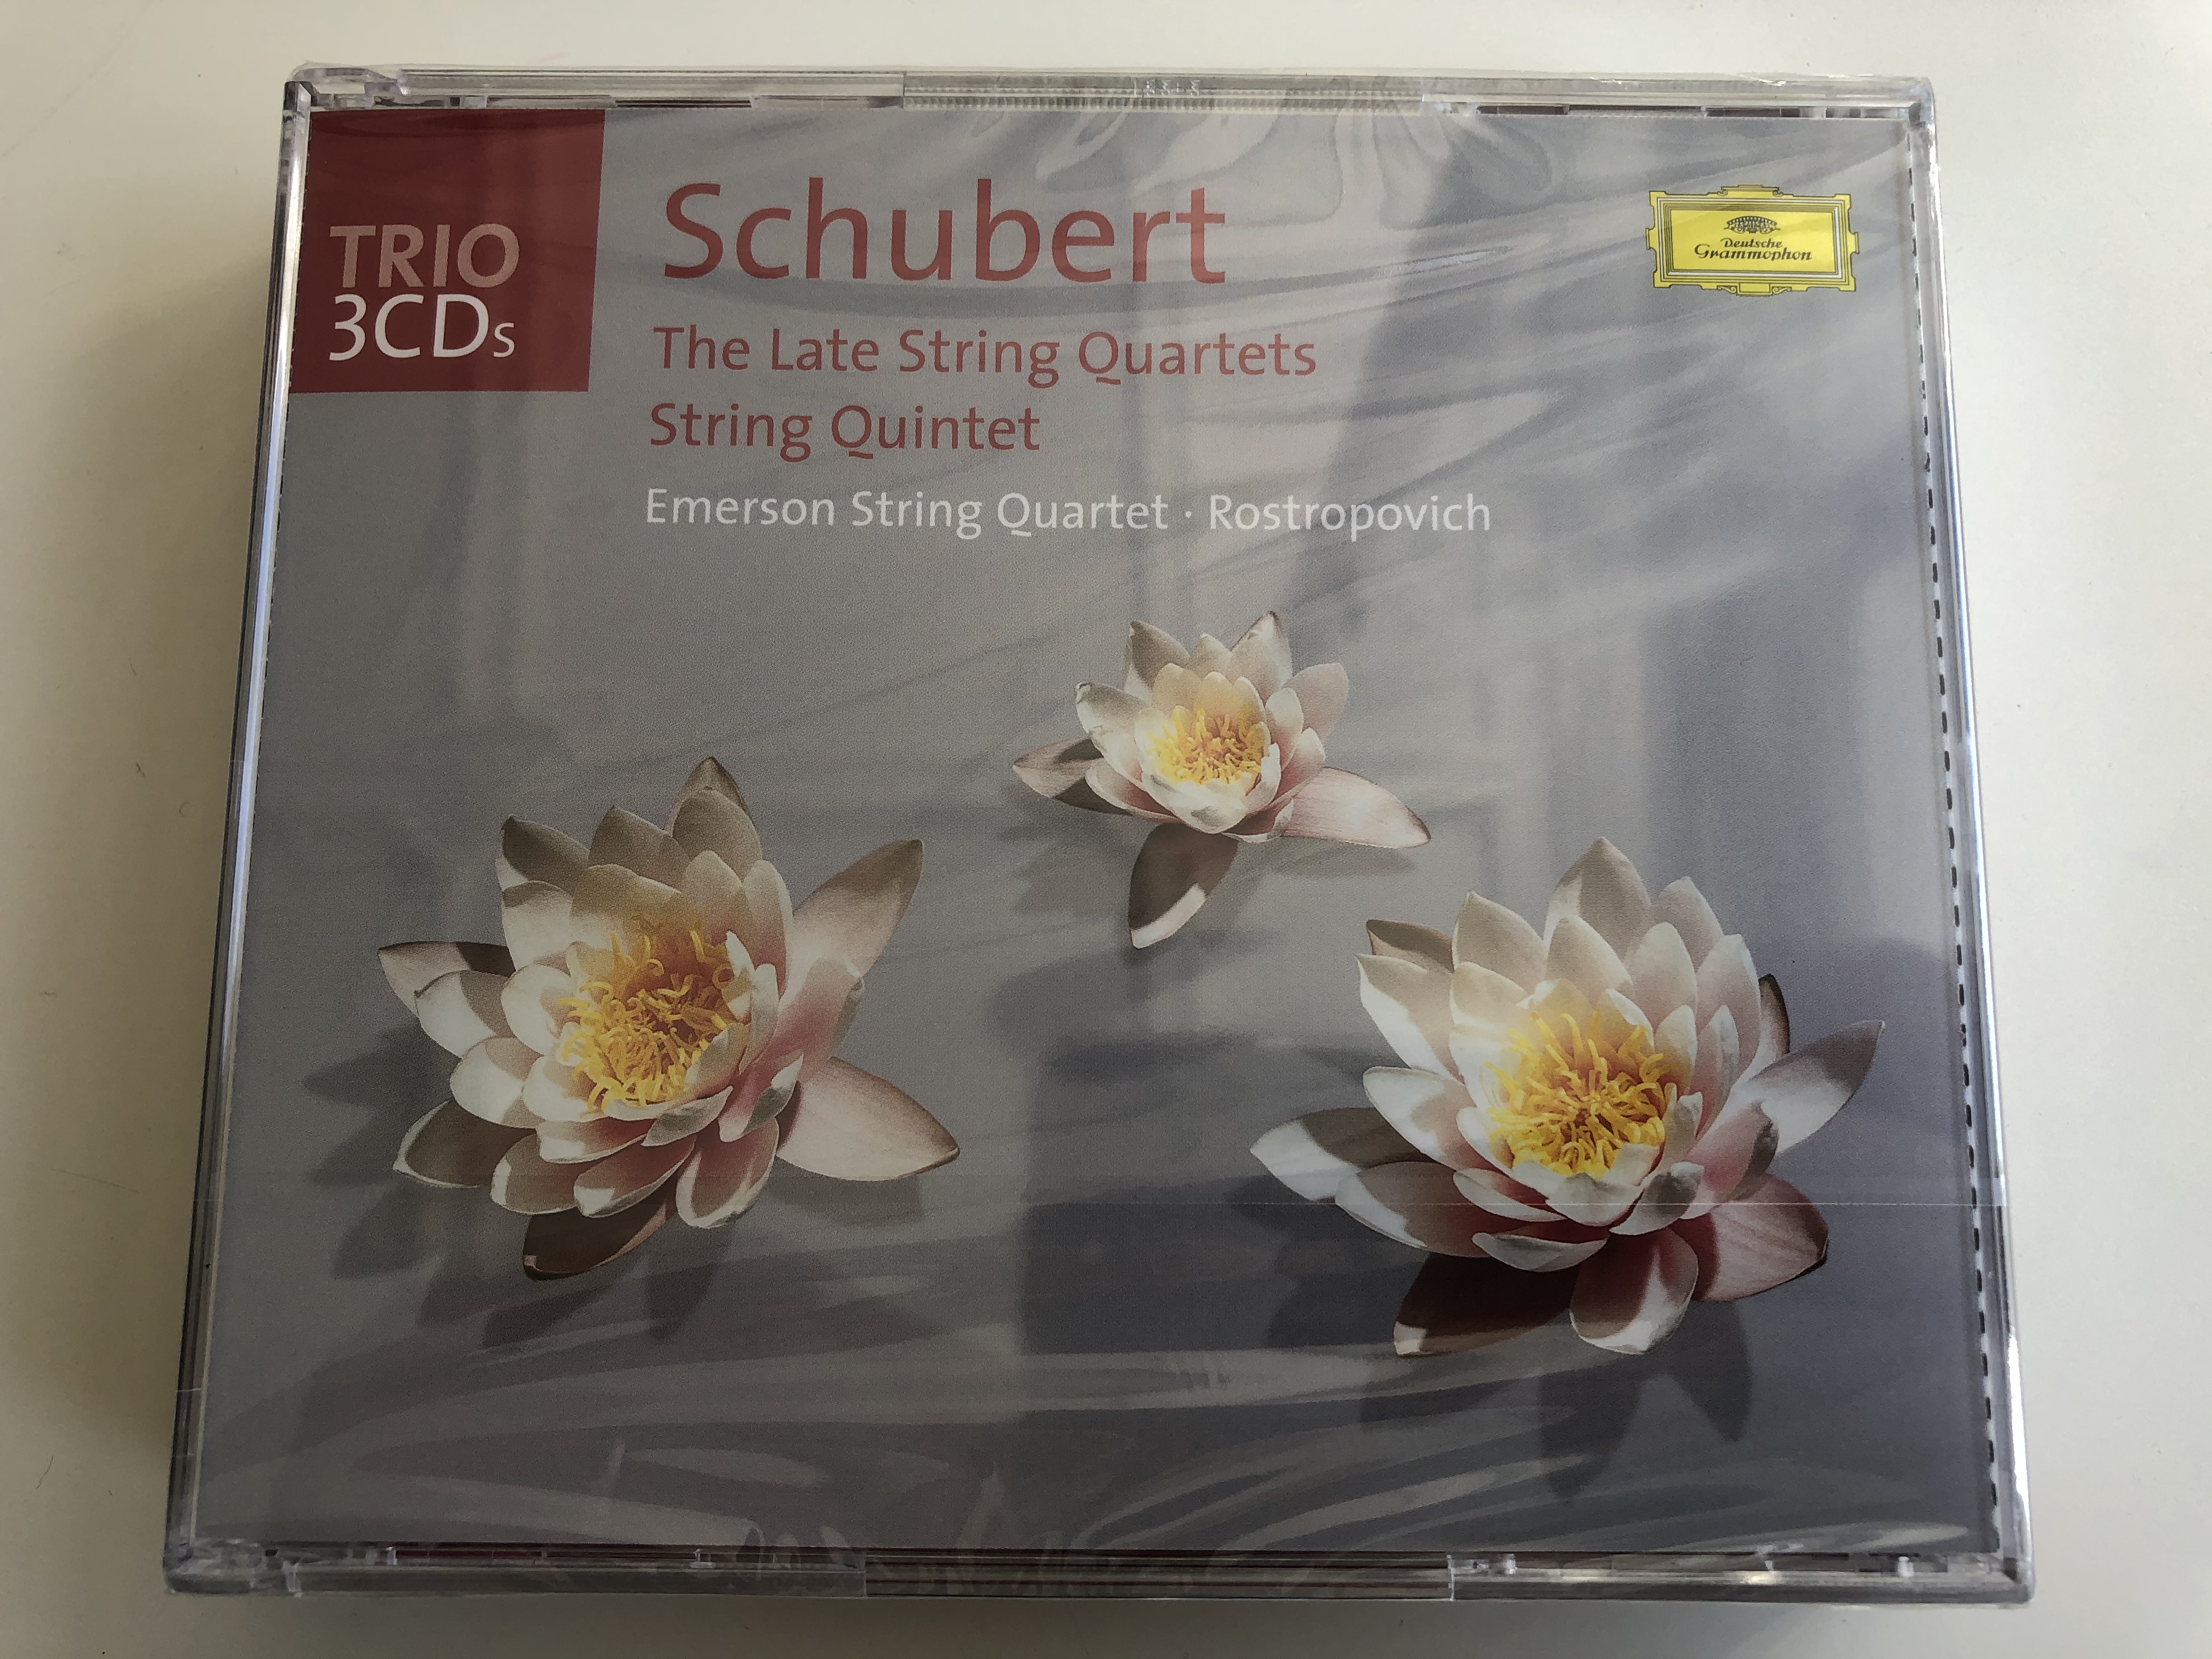 schubert-the-late-string-quartets-string-quintet-emerson-string-quartet-rostropovich-trio-3-cds-deutsche-grammophon-3x-audio-cd-477-045-2-1-.jpg